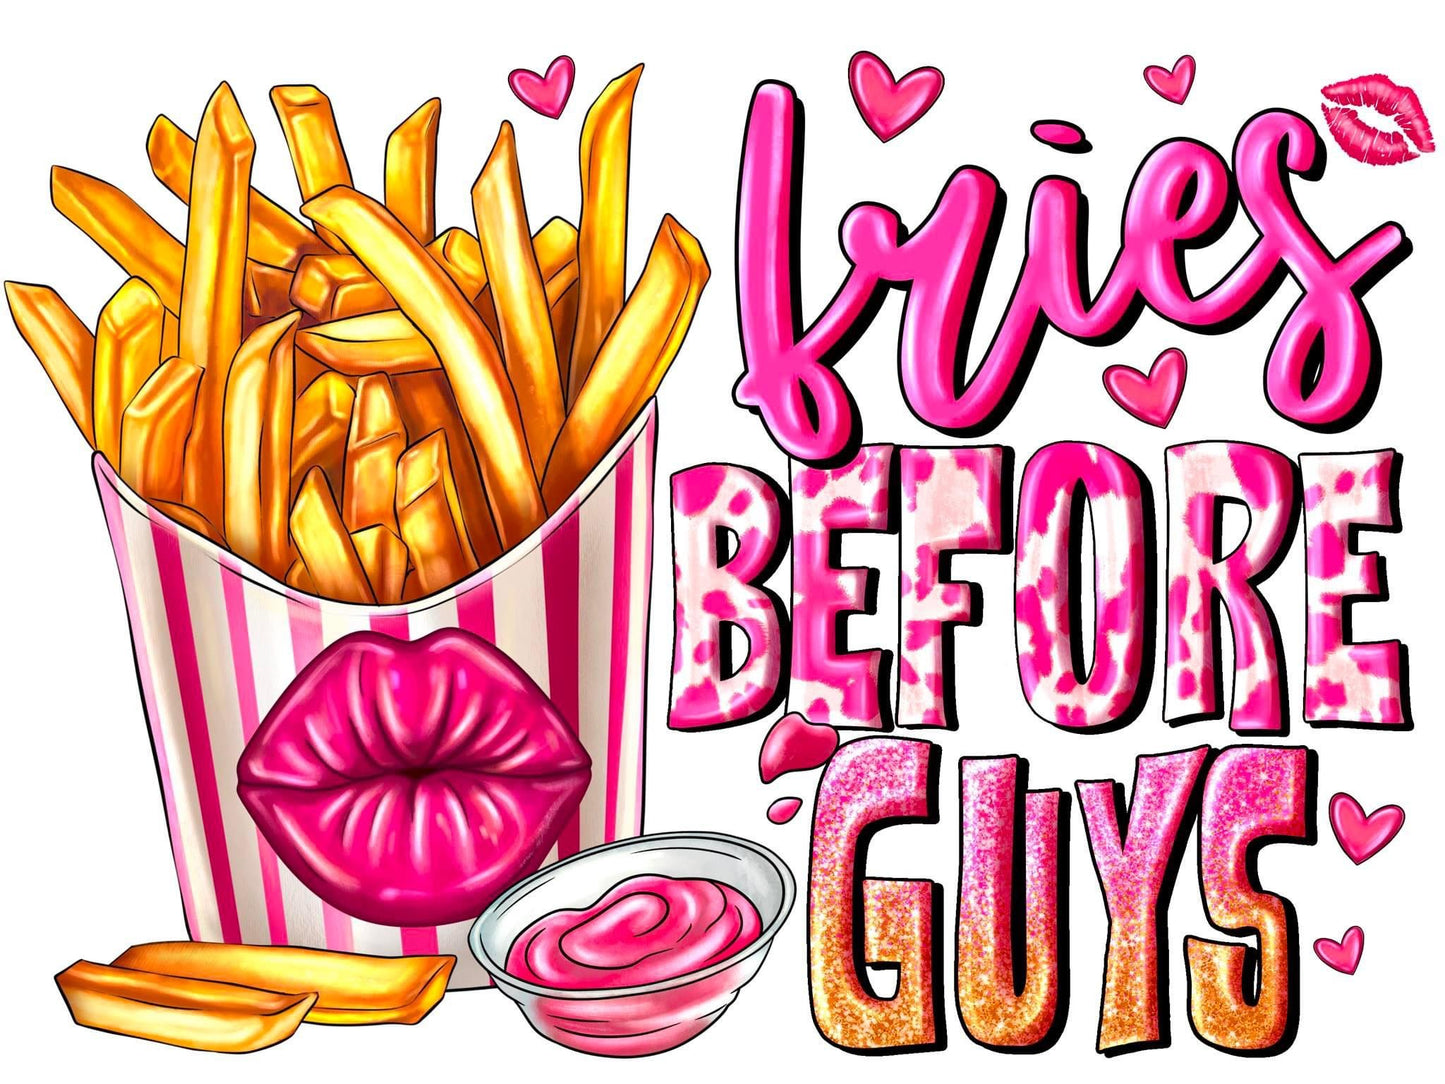 Fries Before Guys, Valentines, Coaster, Cushion, Water Bottle, Keyring, Travel Mug